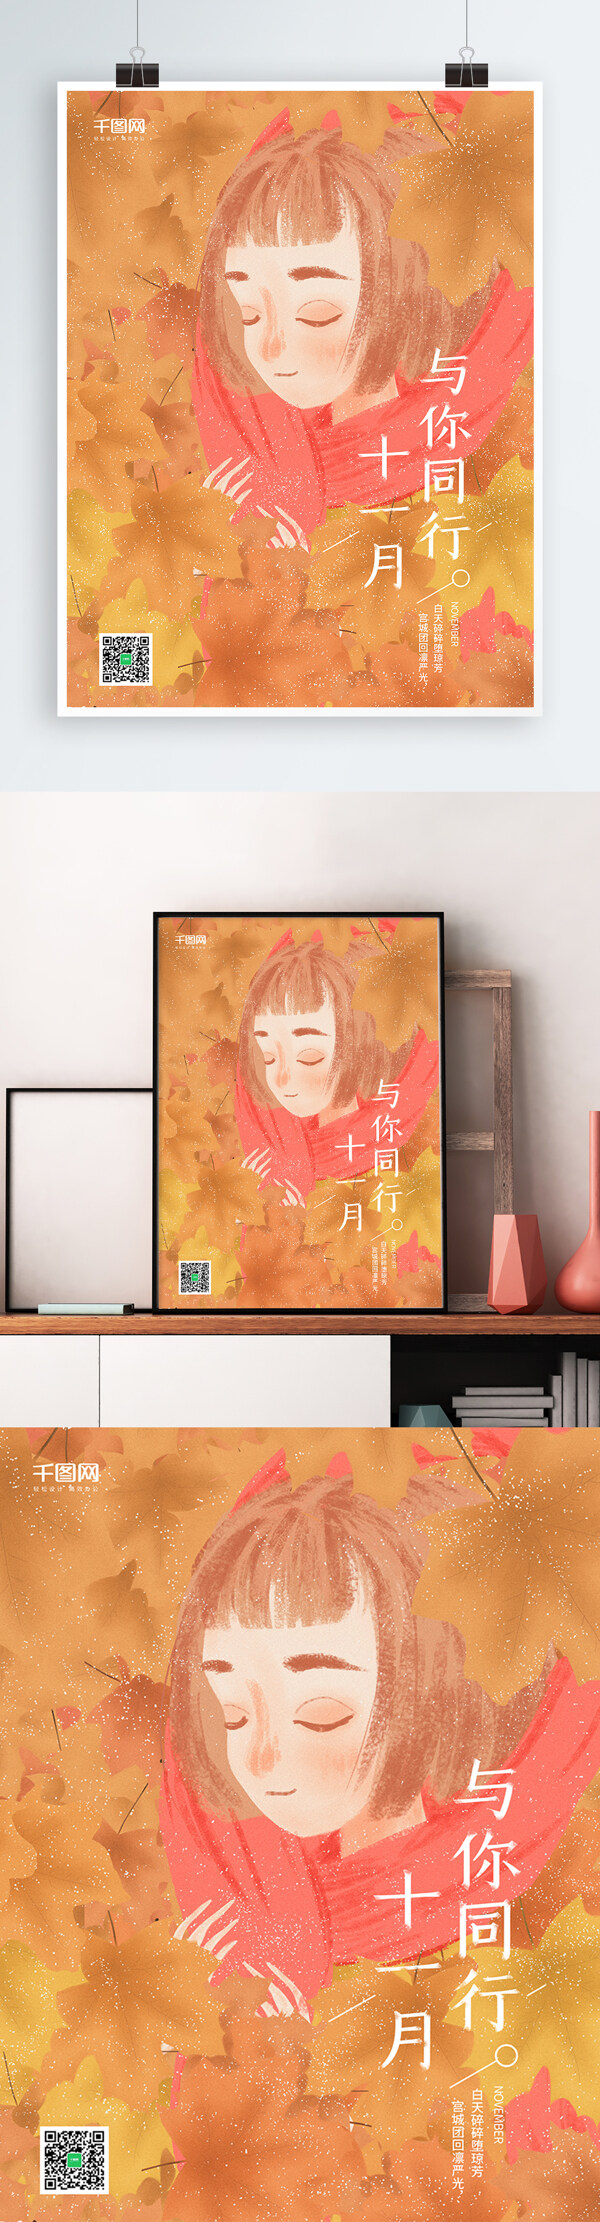 原创插画枫叶女孩十一月你好海报